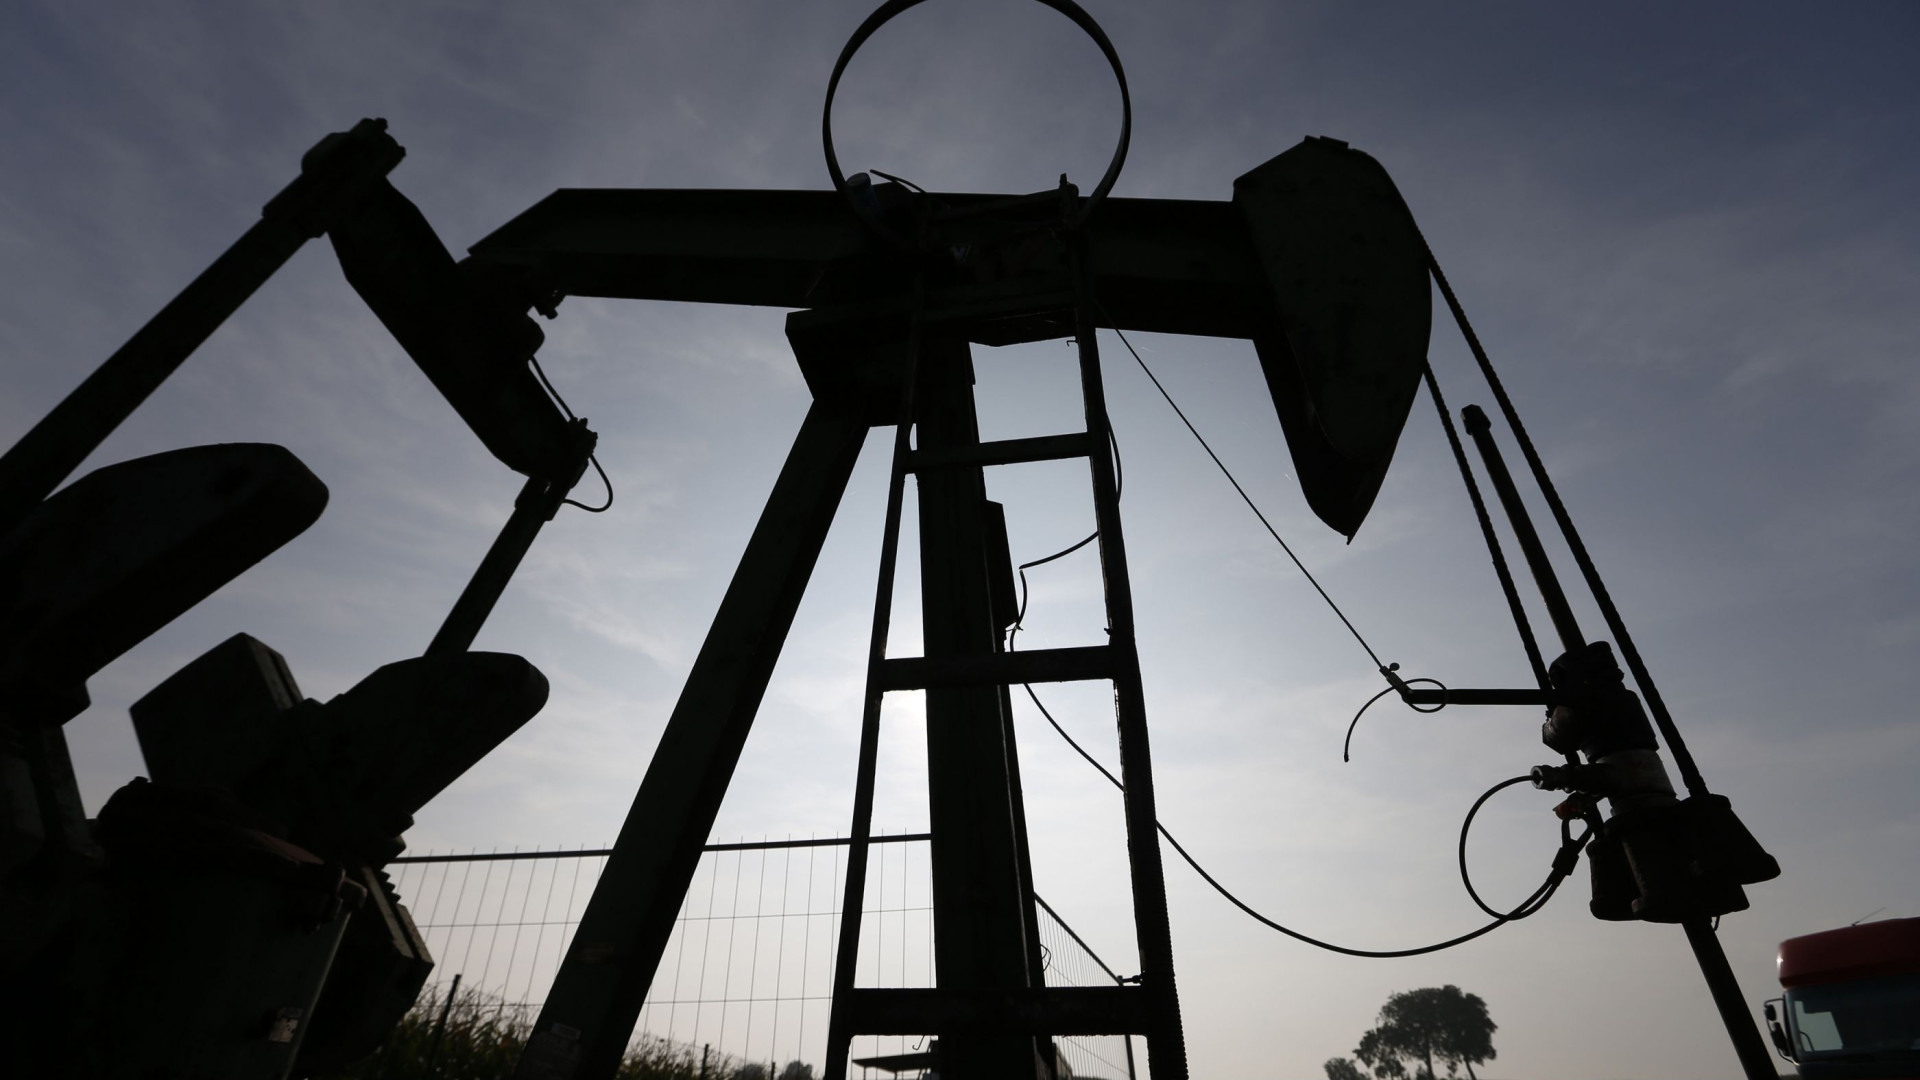 Iraque congelará produção de petróleo 
em 5 milhões de barris diários